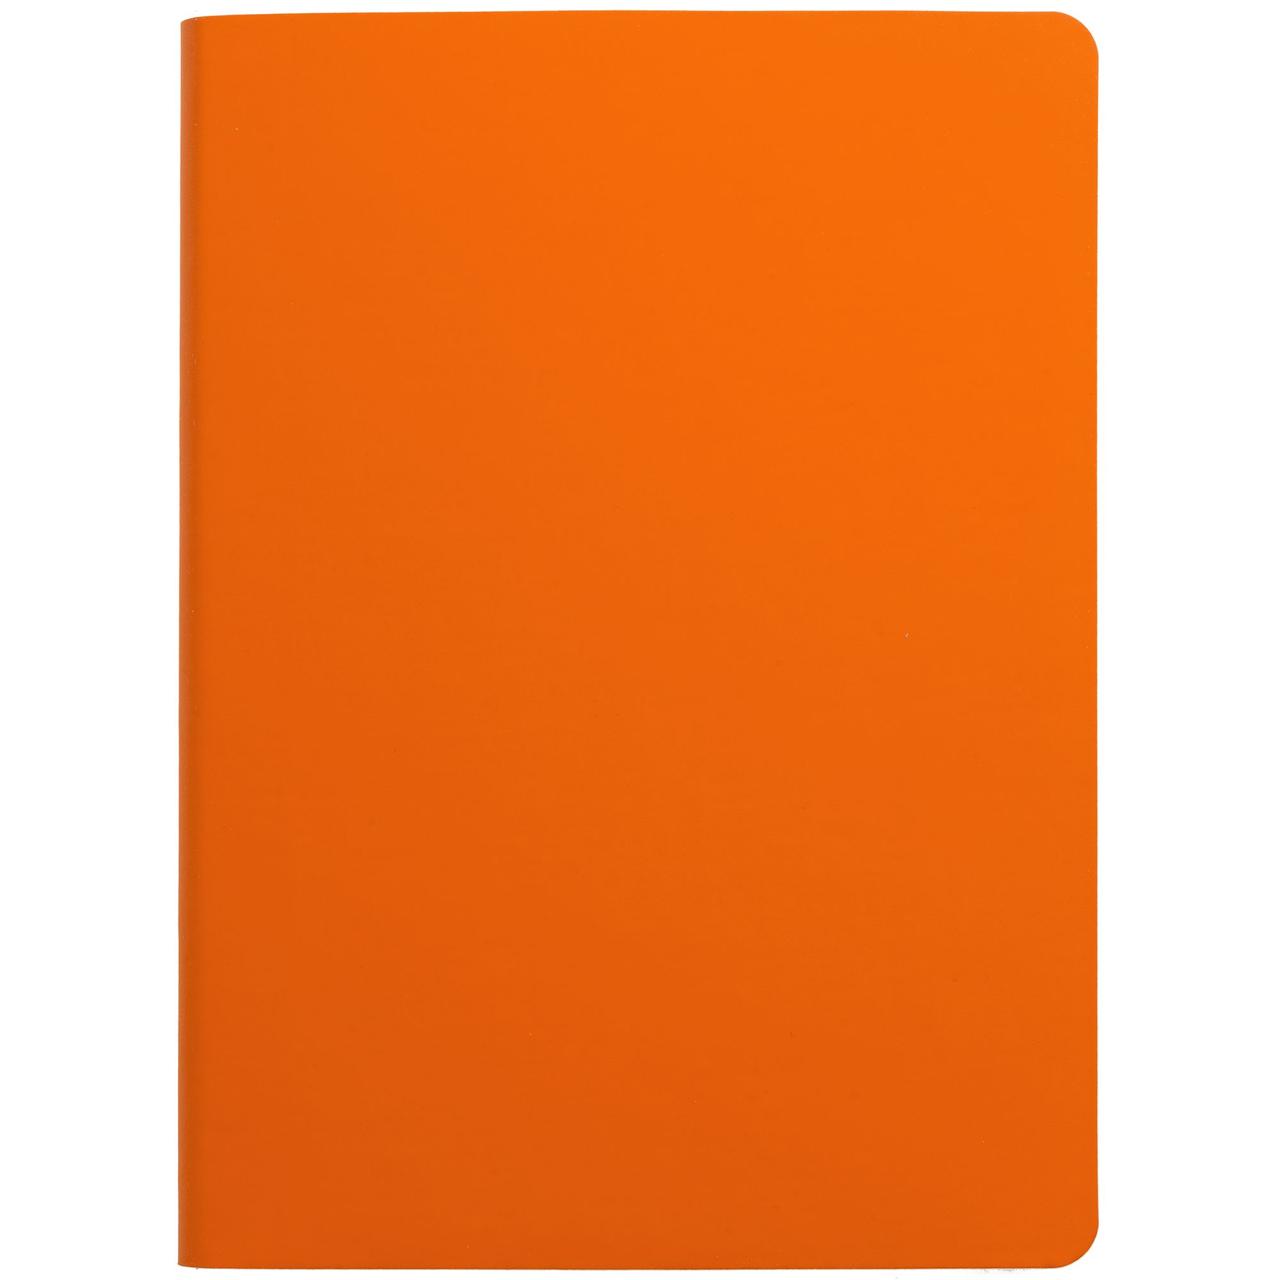 Ежедневник Flex Shall, недатированный, оранжевый (артикул 7881.20)